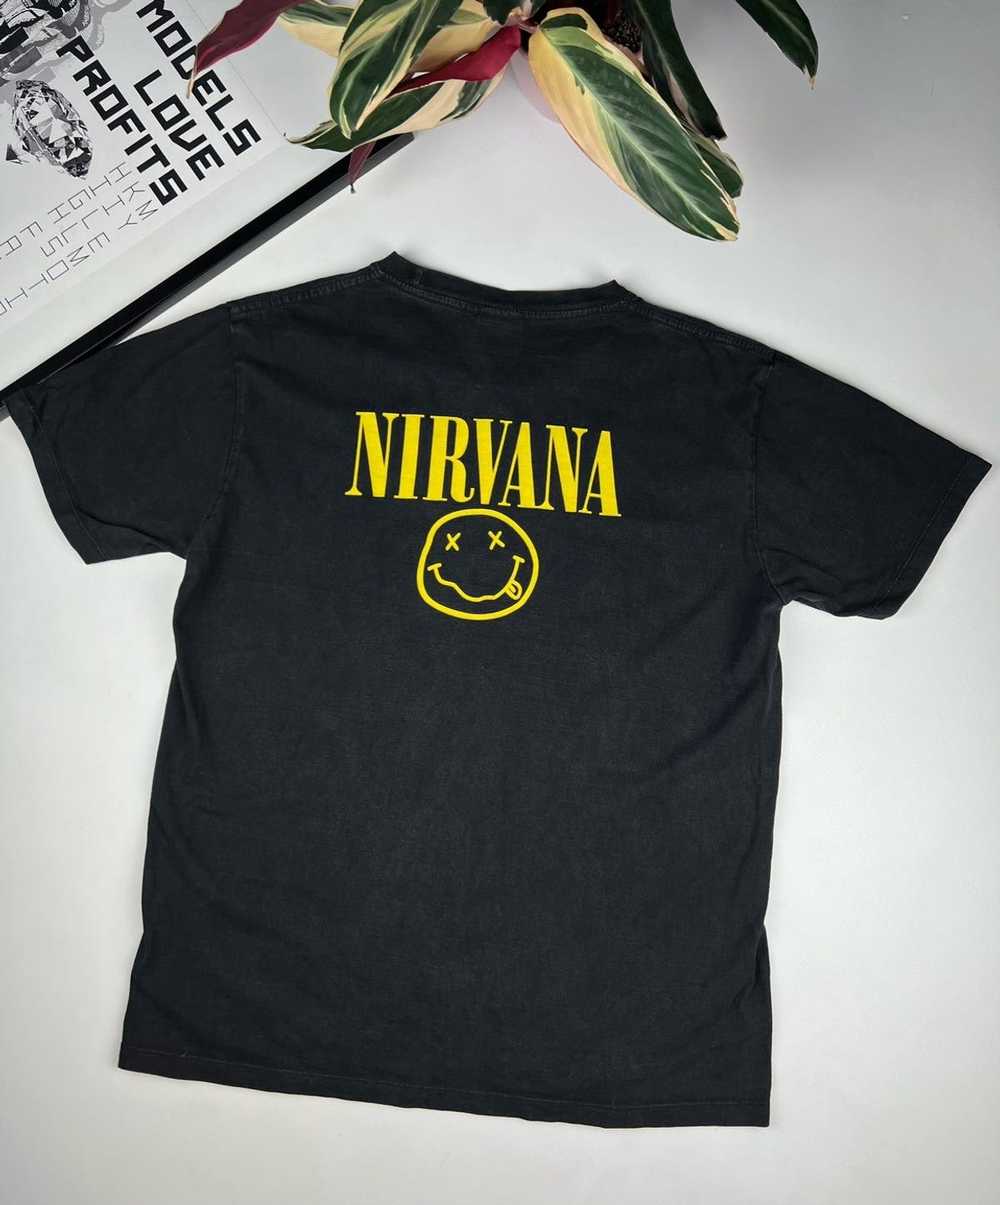 Band Tees × Nirvana × Rock T Shirt 90s vintage Ni… - image 2